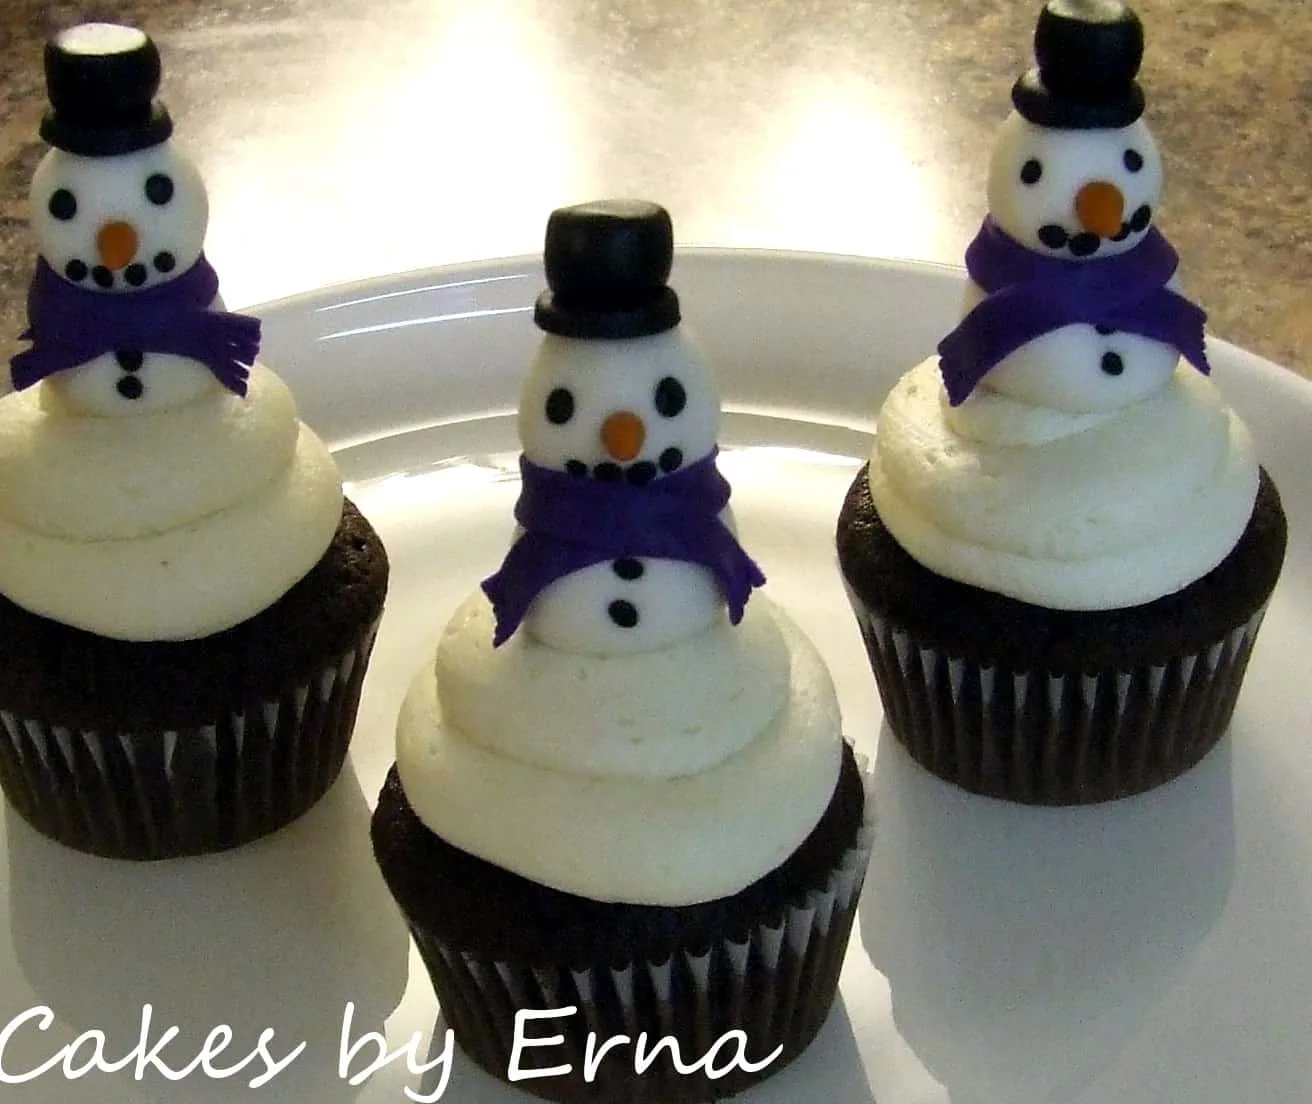 Snowman cupcakes